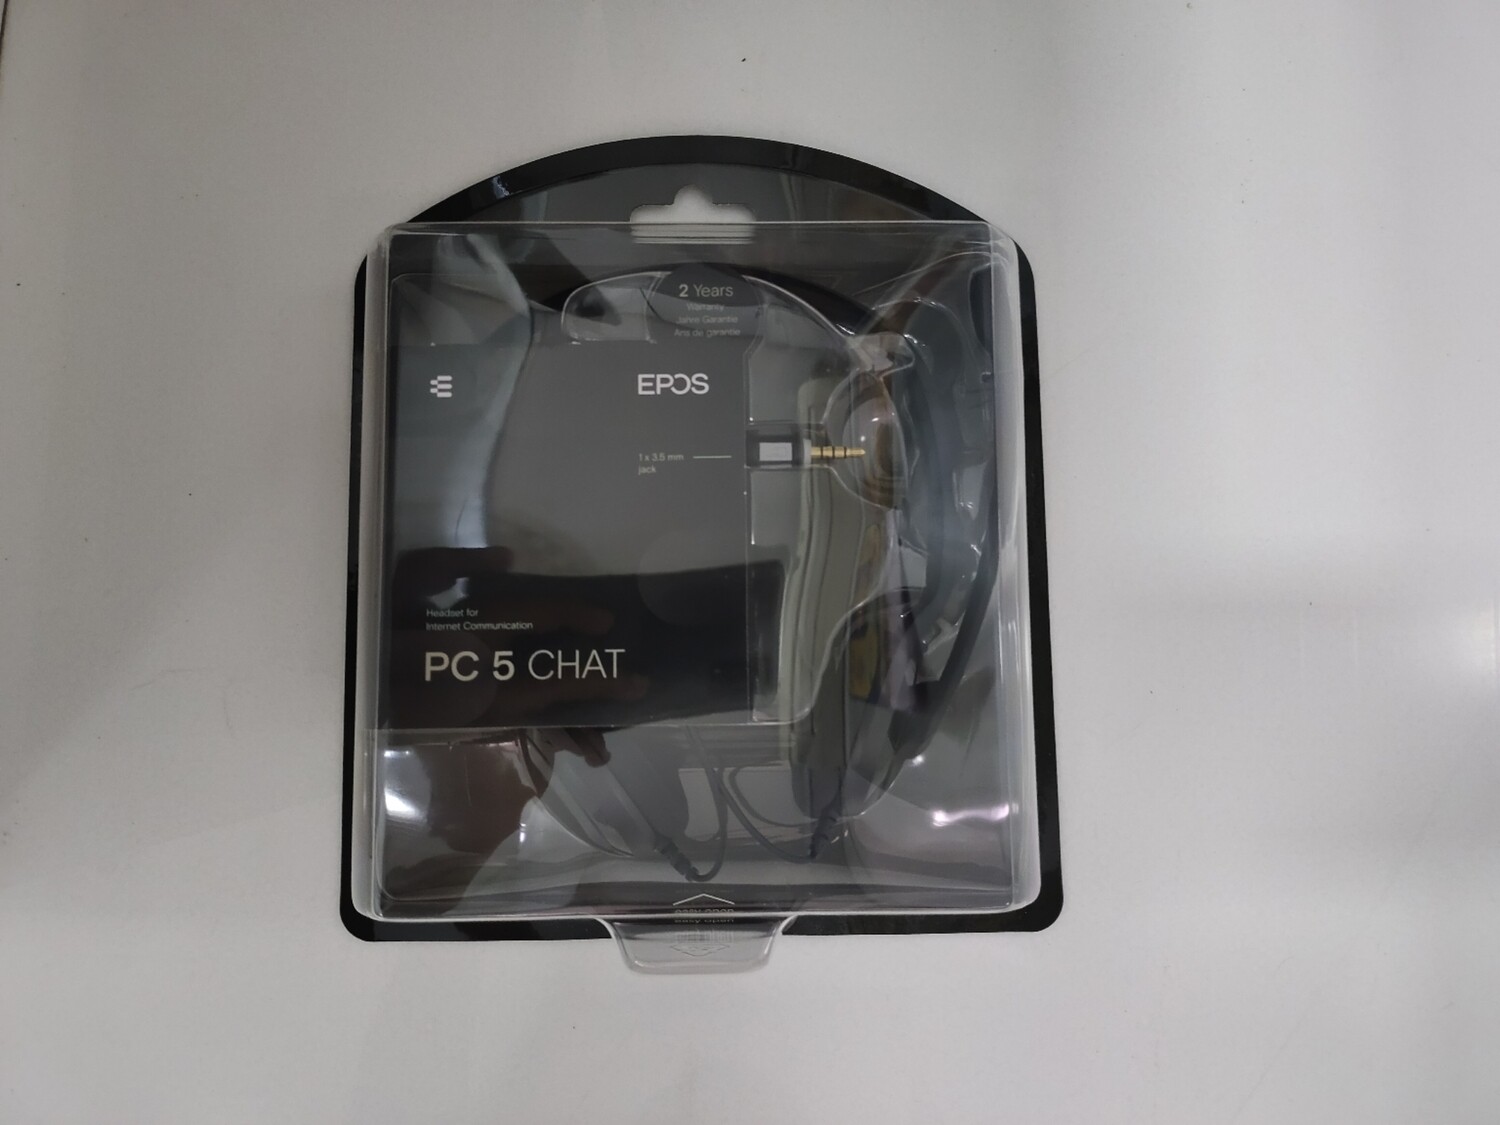 Sennheiser / EPOS PC 5 Chat Headset for Internet Communication